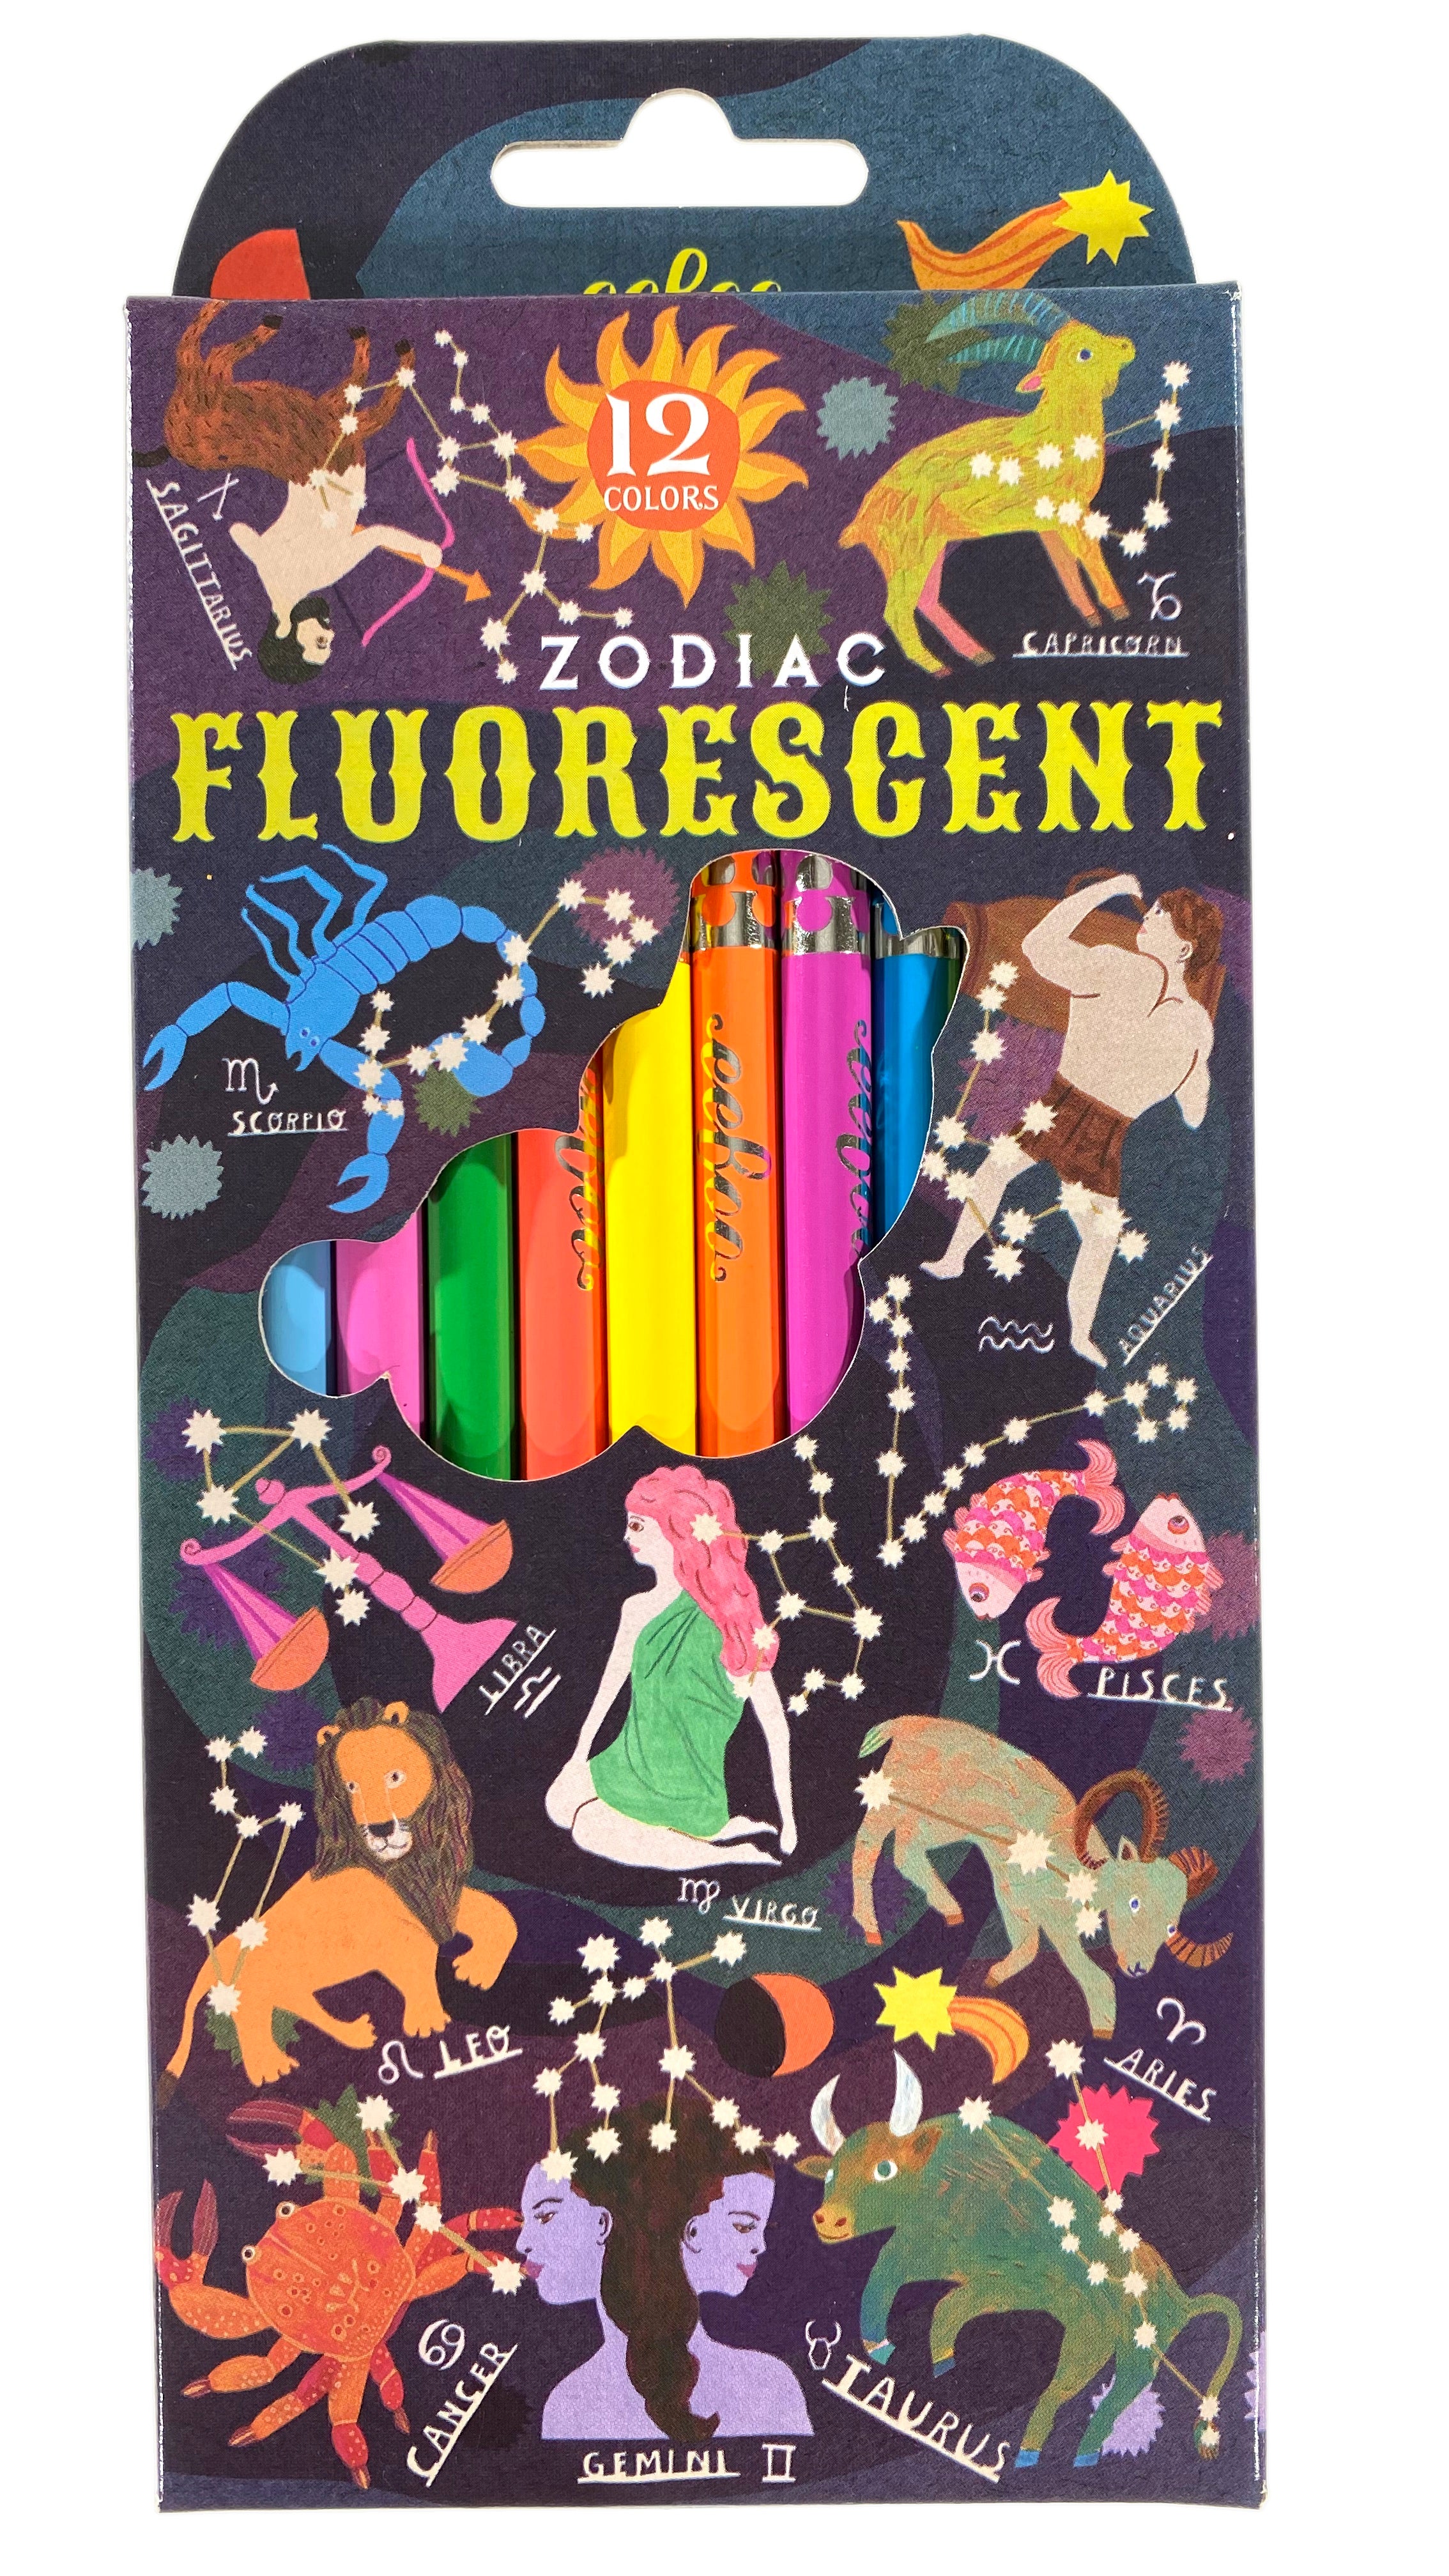 Zodiac - 12 Fluorescent Colored Pencils    